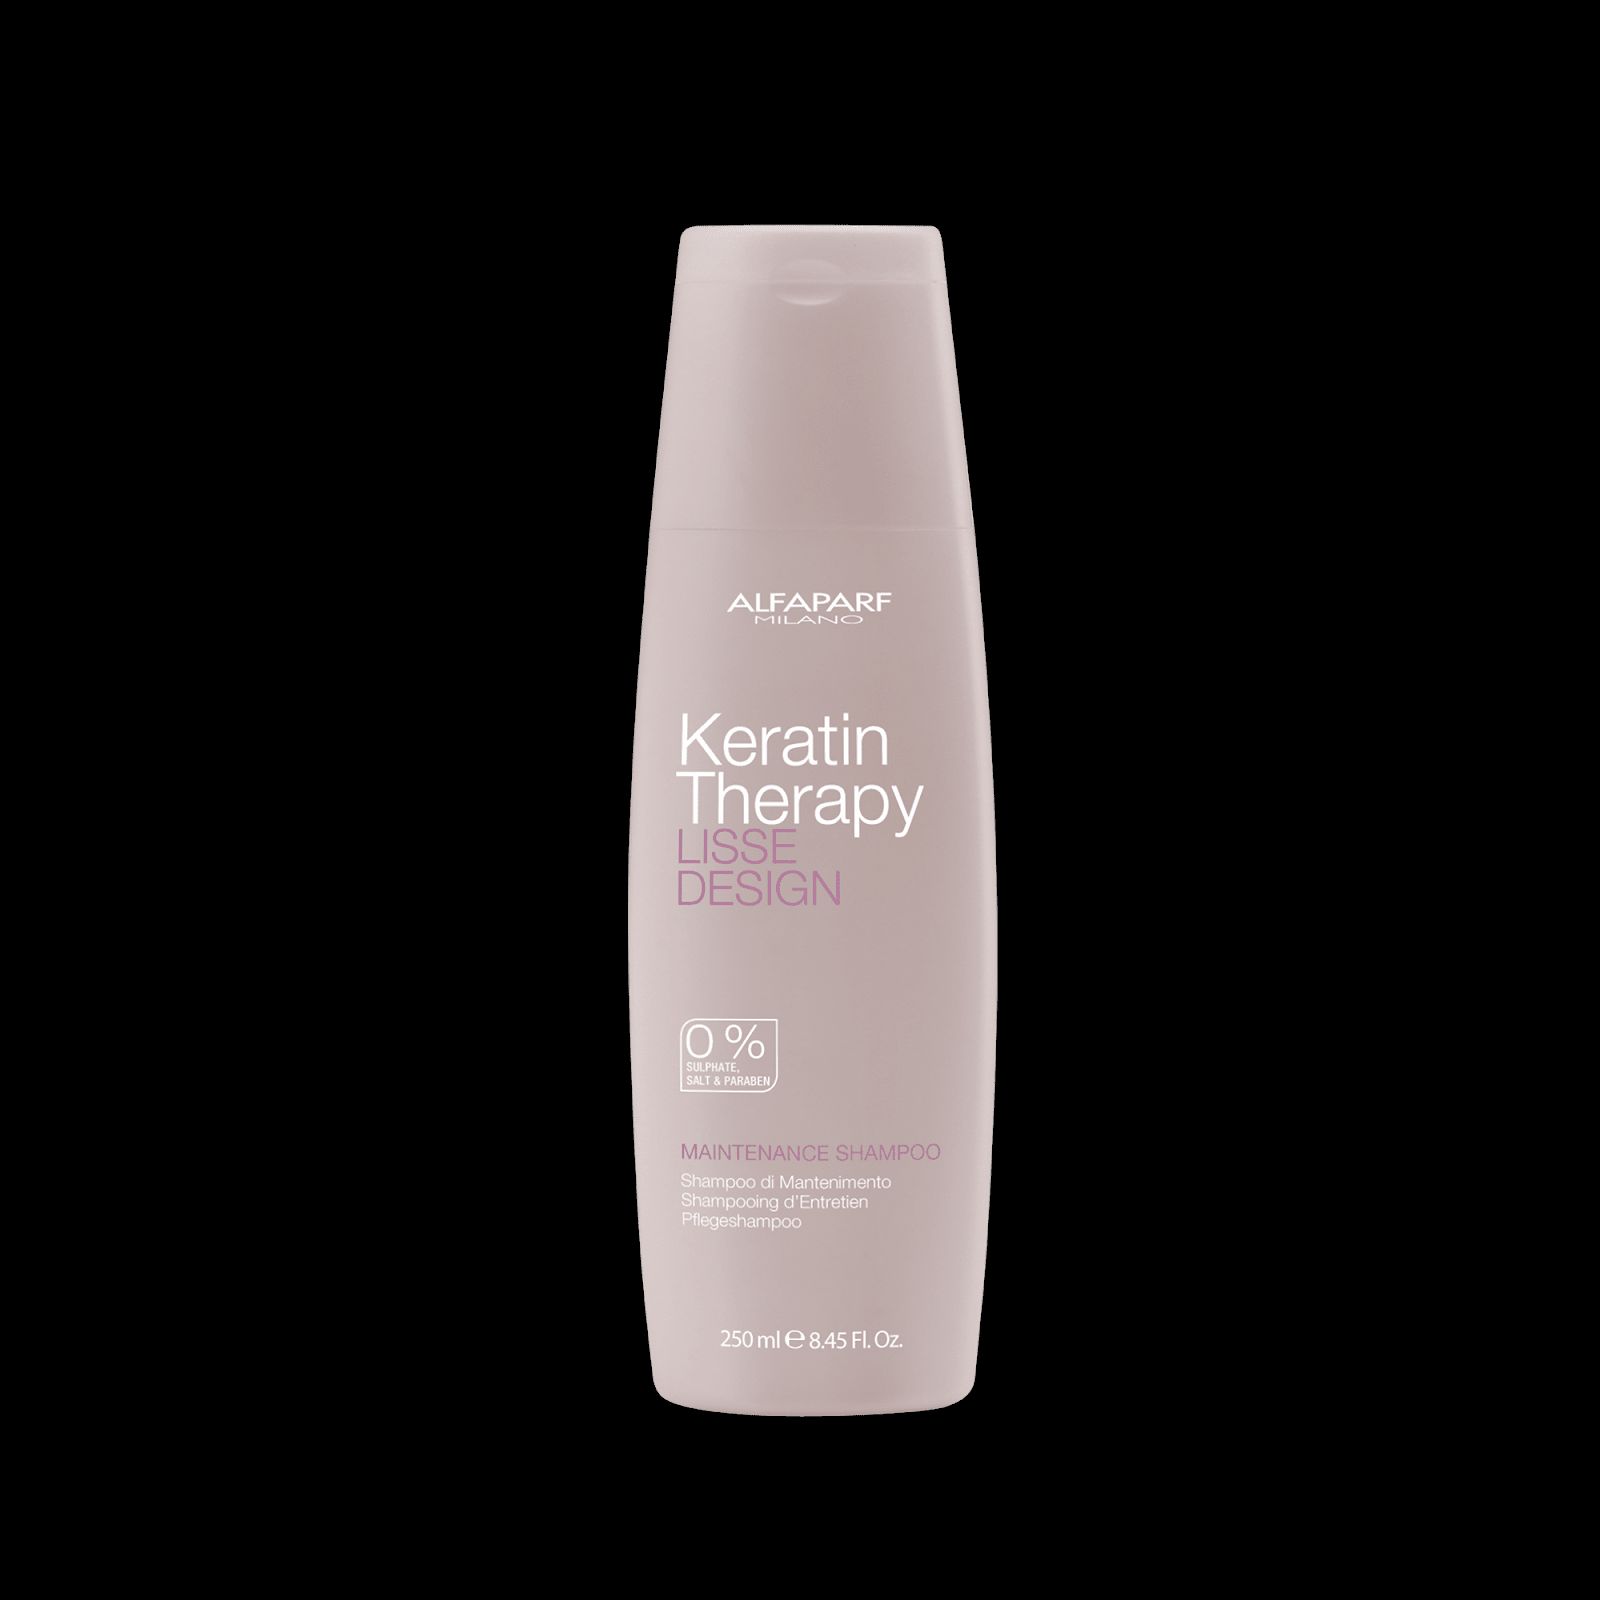 Keratin therapy shampoo